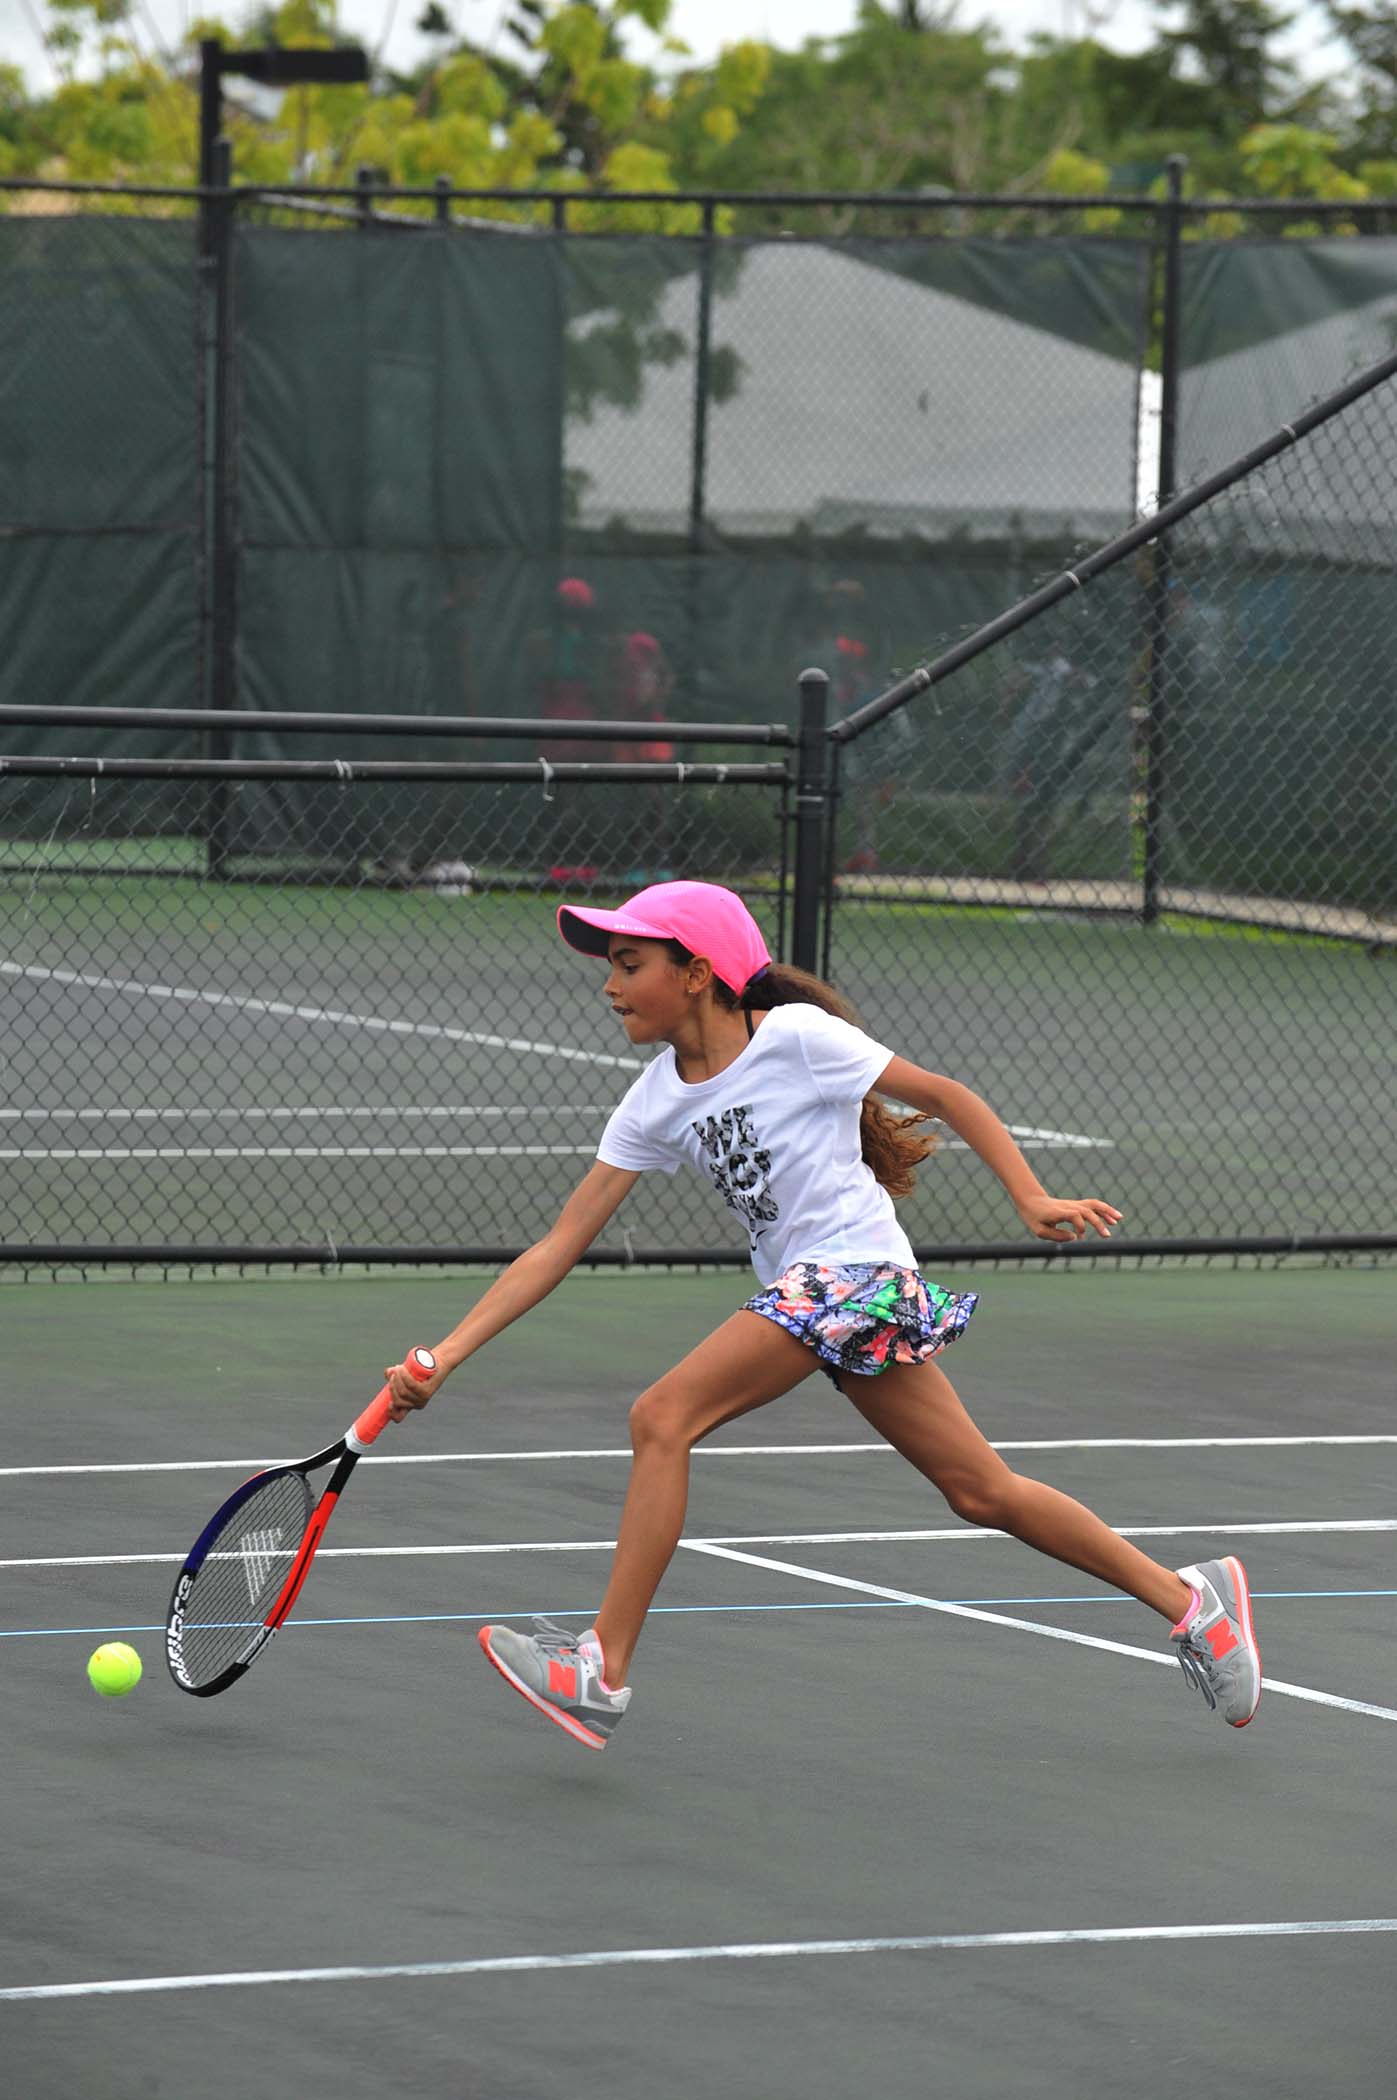 Torneo Desarrollo Juvenil de Tenis en el Centro de Tenis Honda